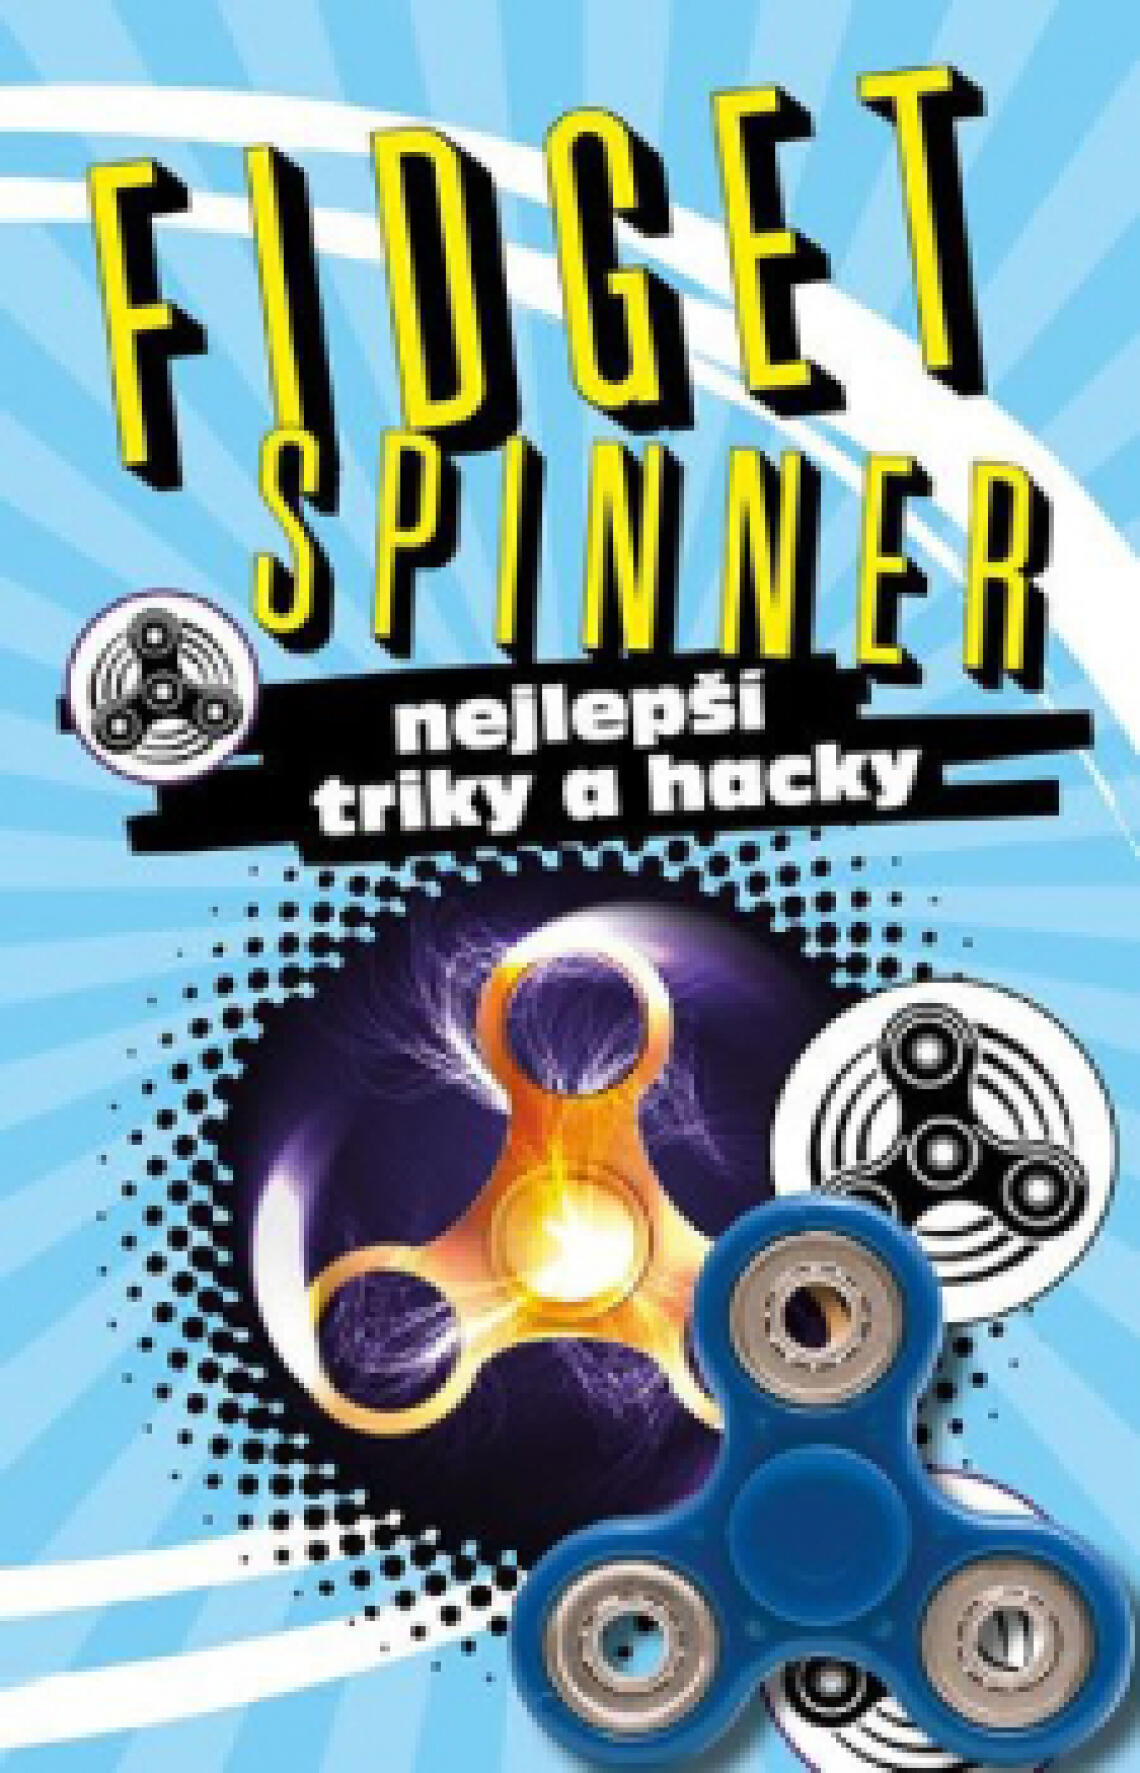 FIDGET SPINNER – nejlepší triky a hacky